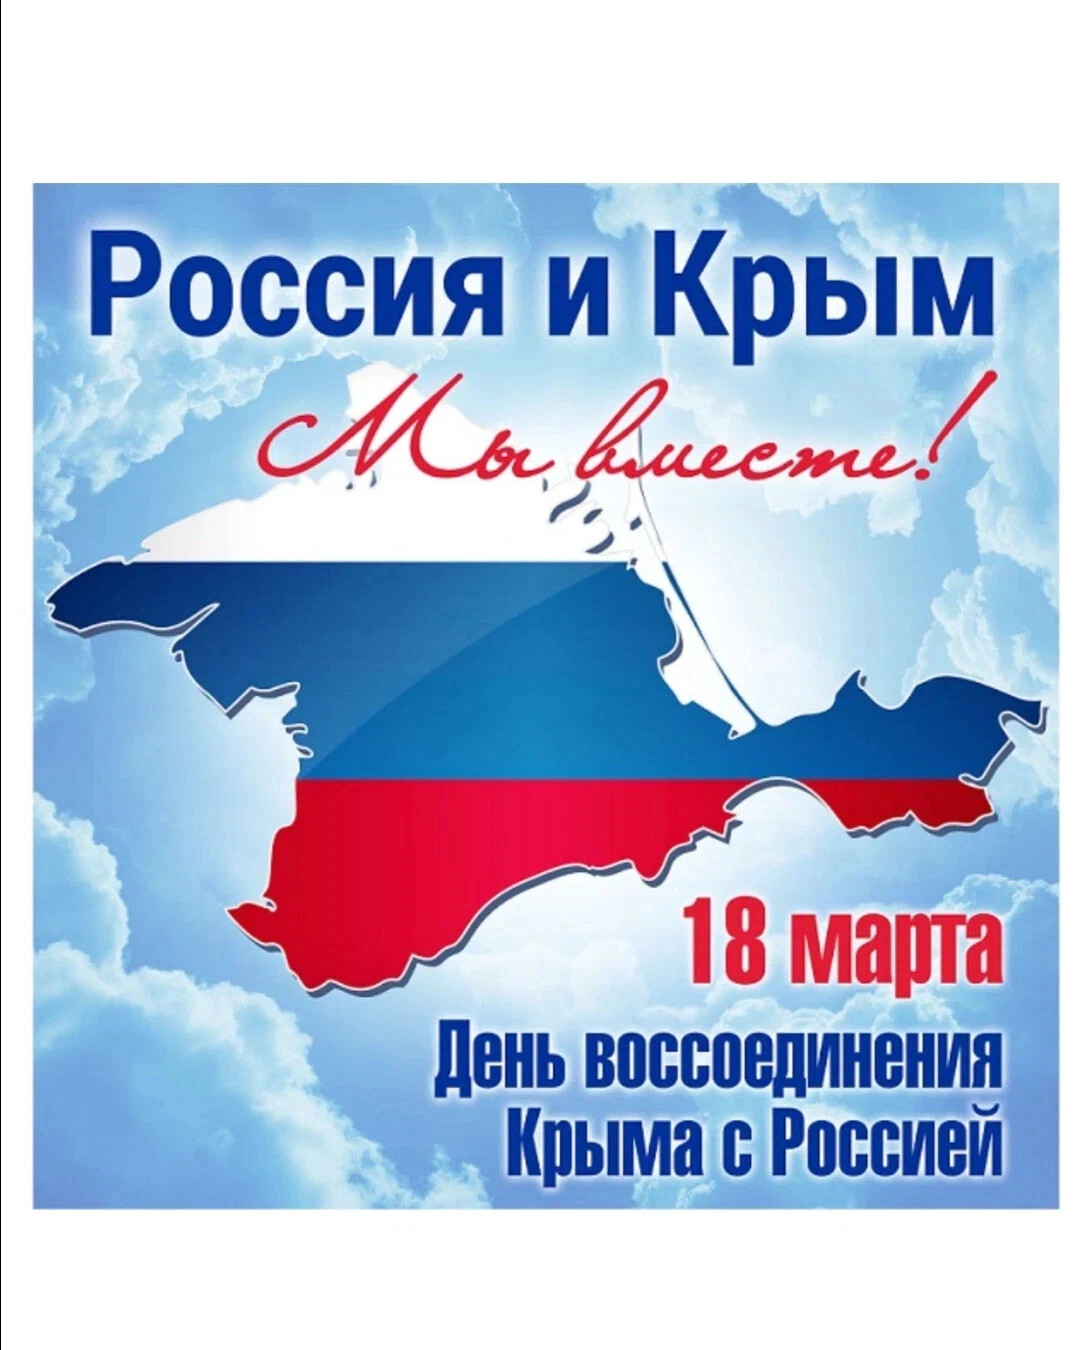 You are currently viewing просмотр документального фильма «Остров Крым»